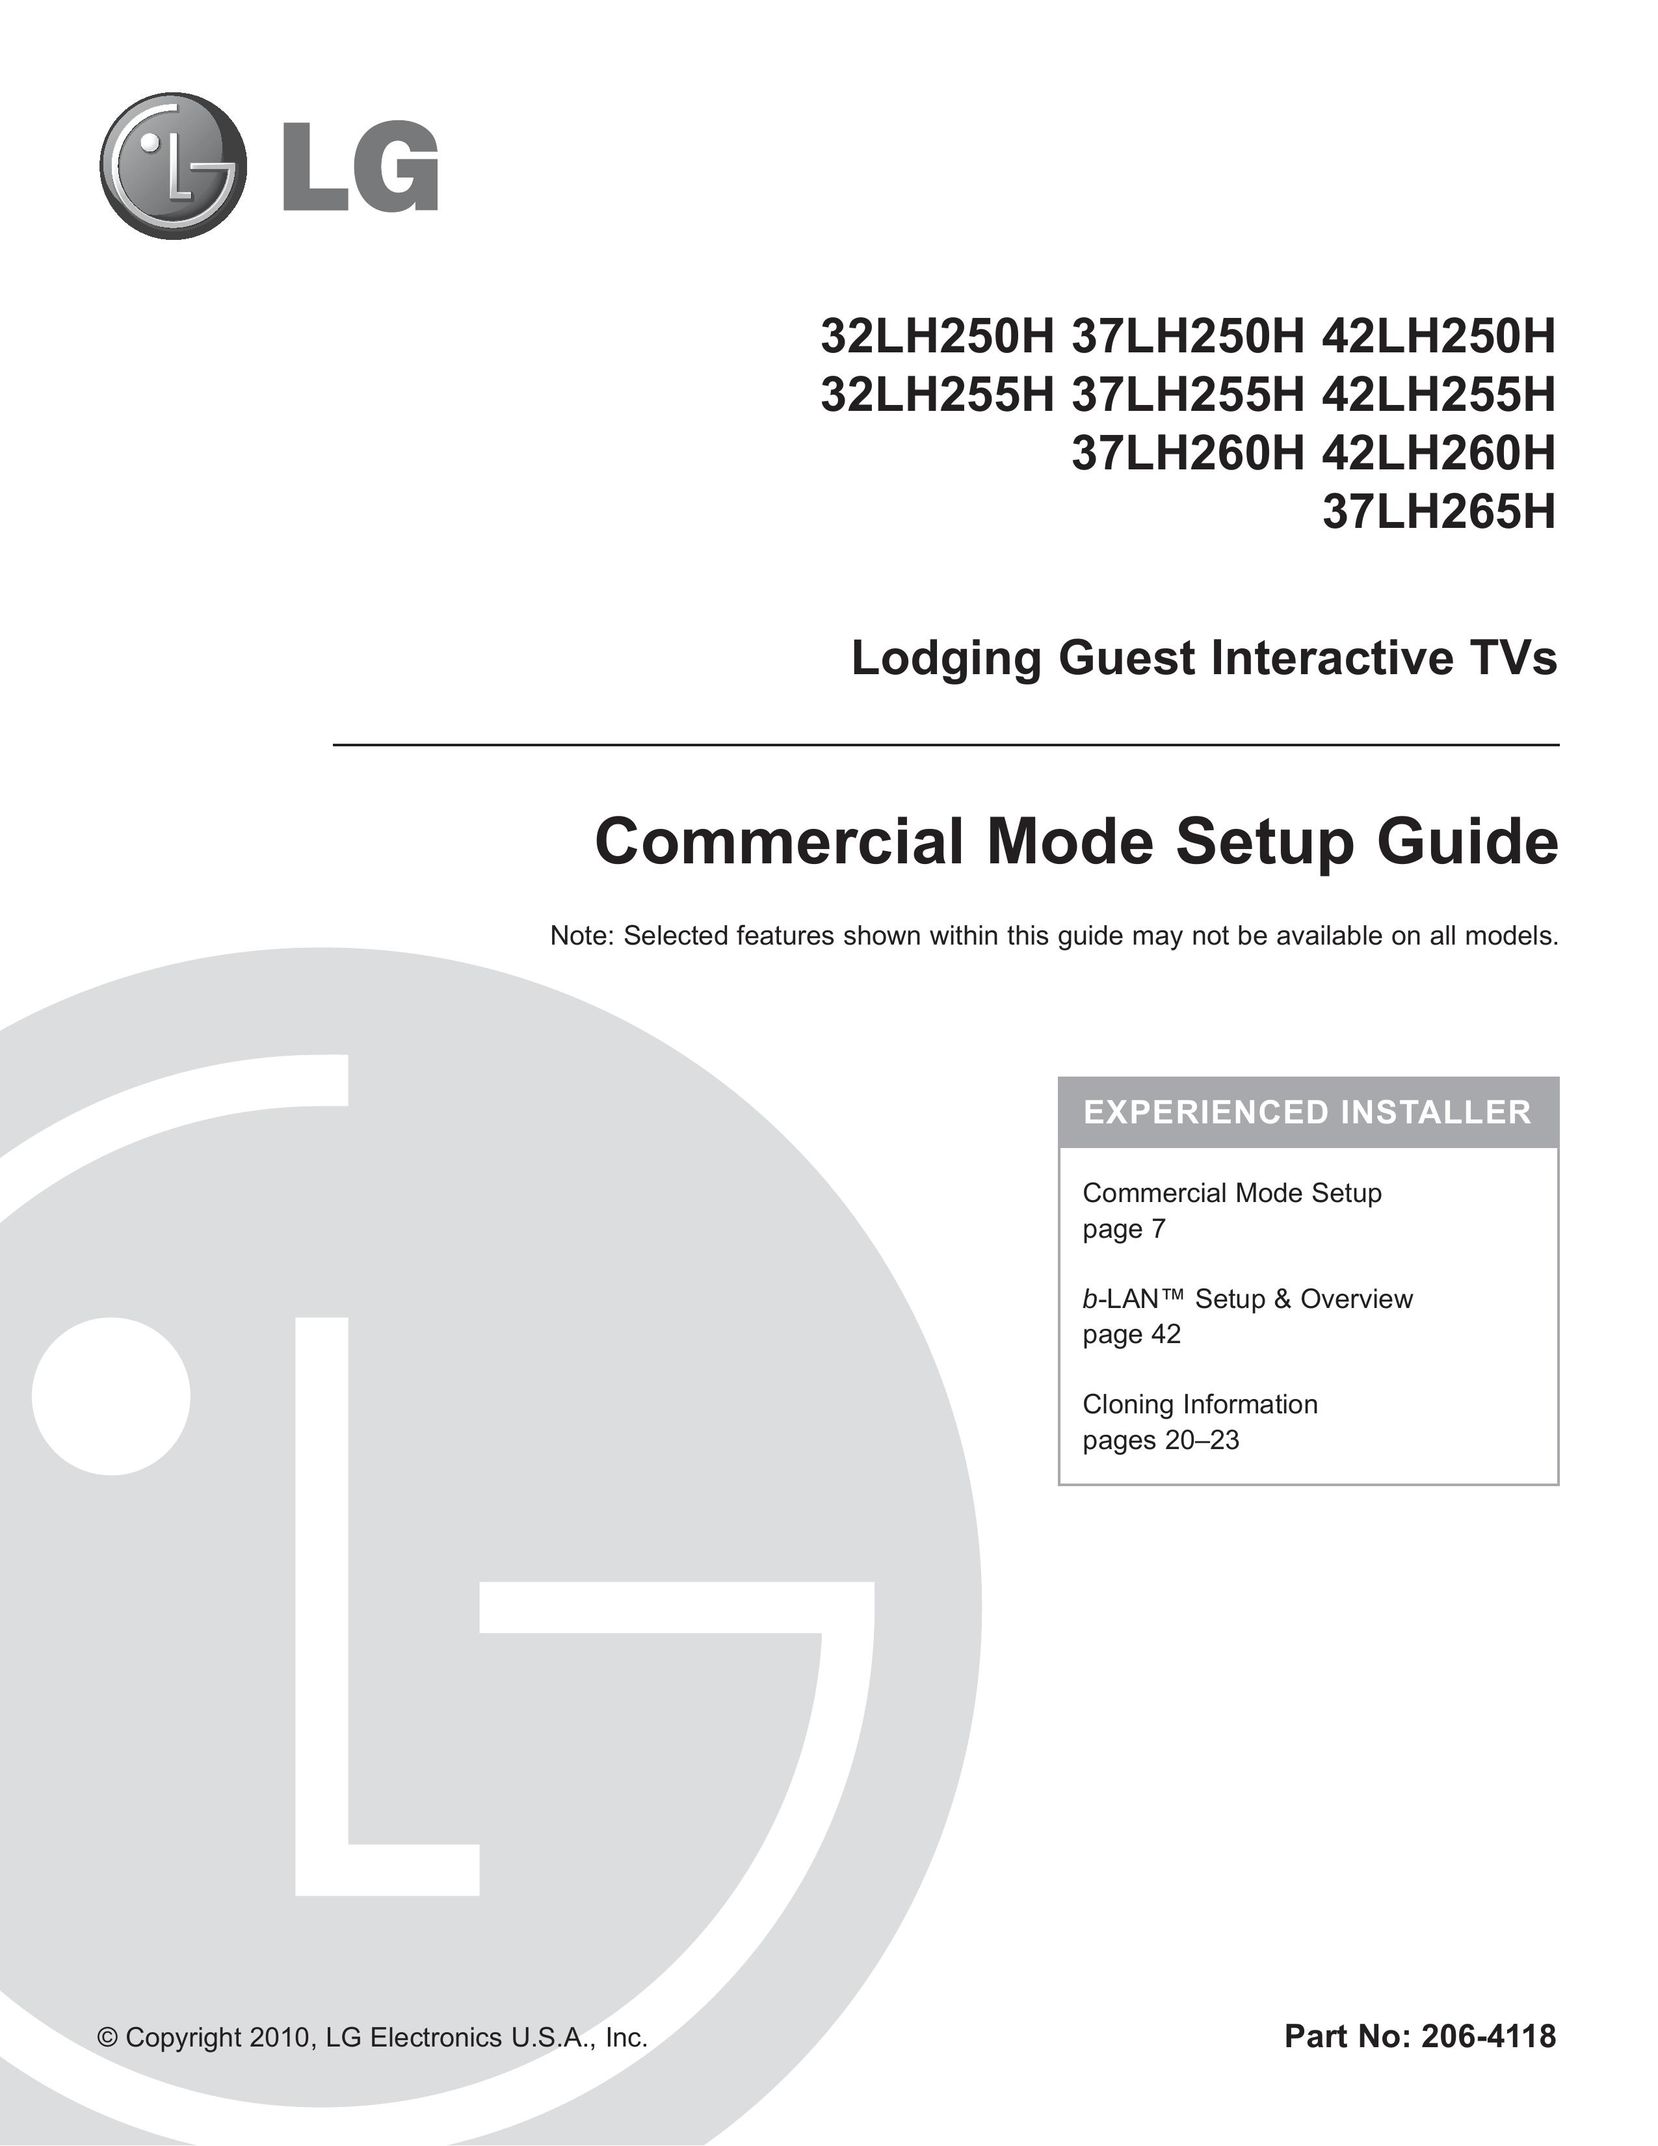 LG Electronics 37LH260H Car Satellite TV System User Manual